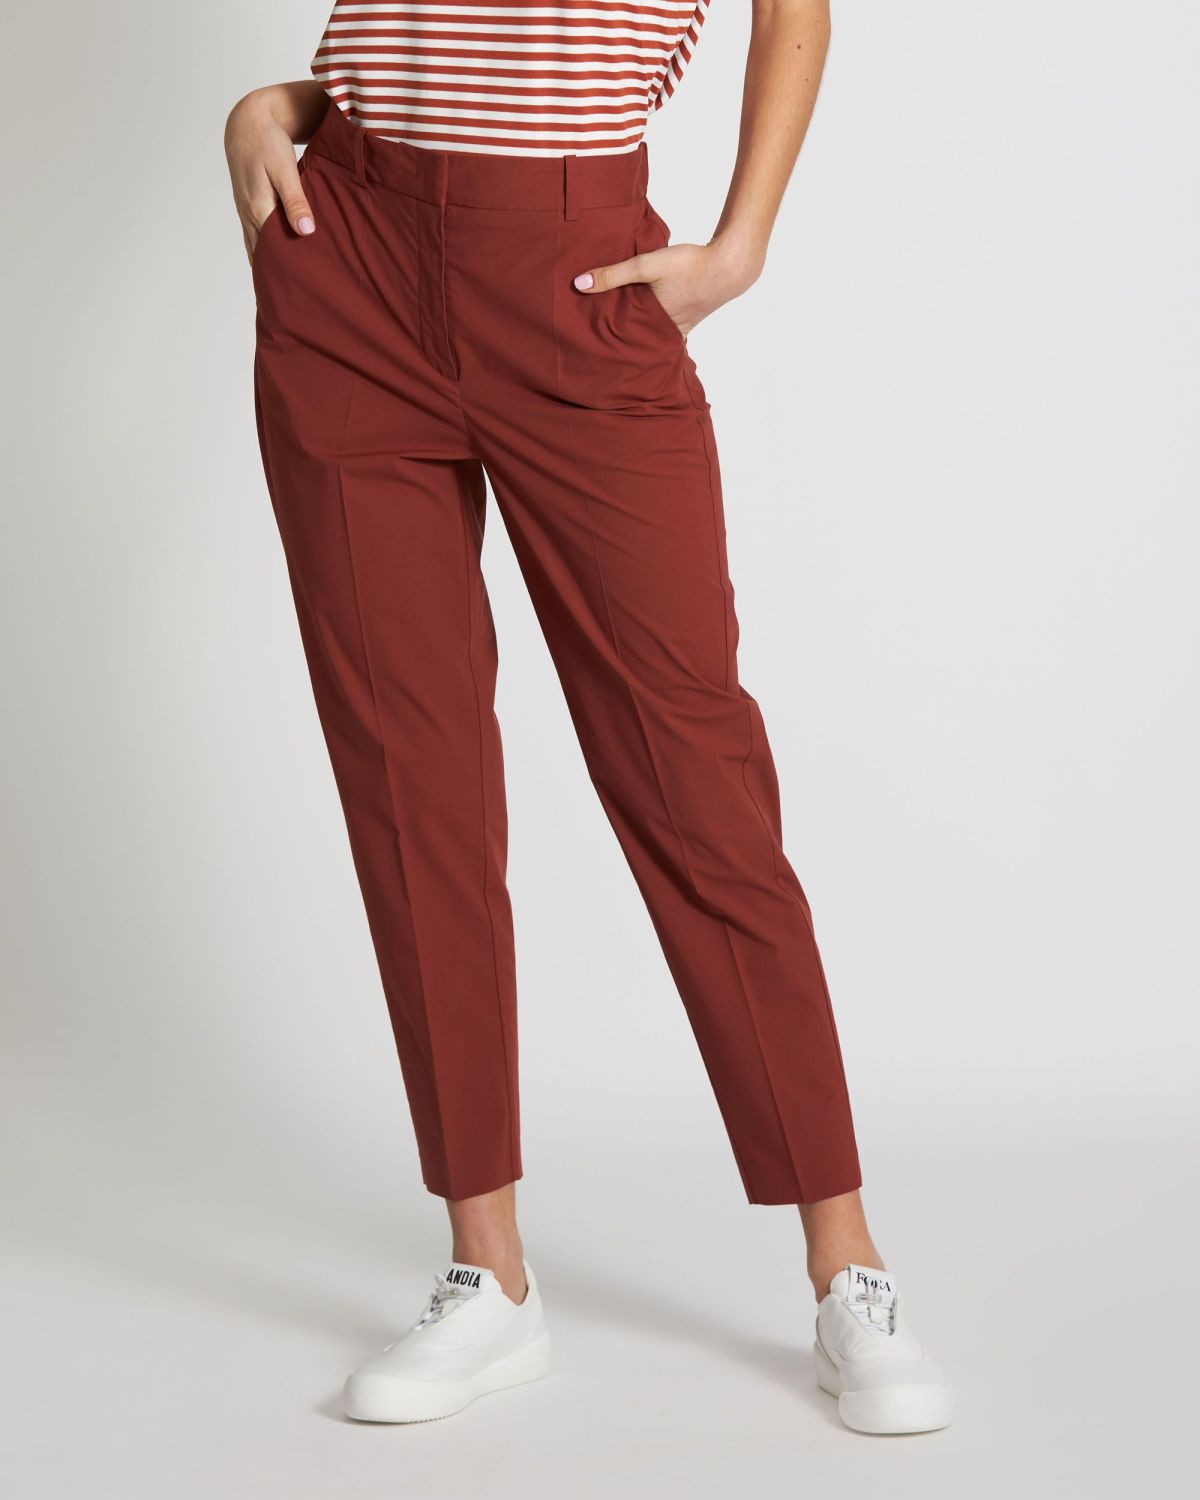 Pantalone in Cotone Stretch / Marrone - Ideal Moda